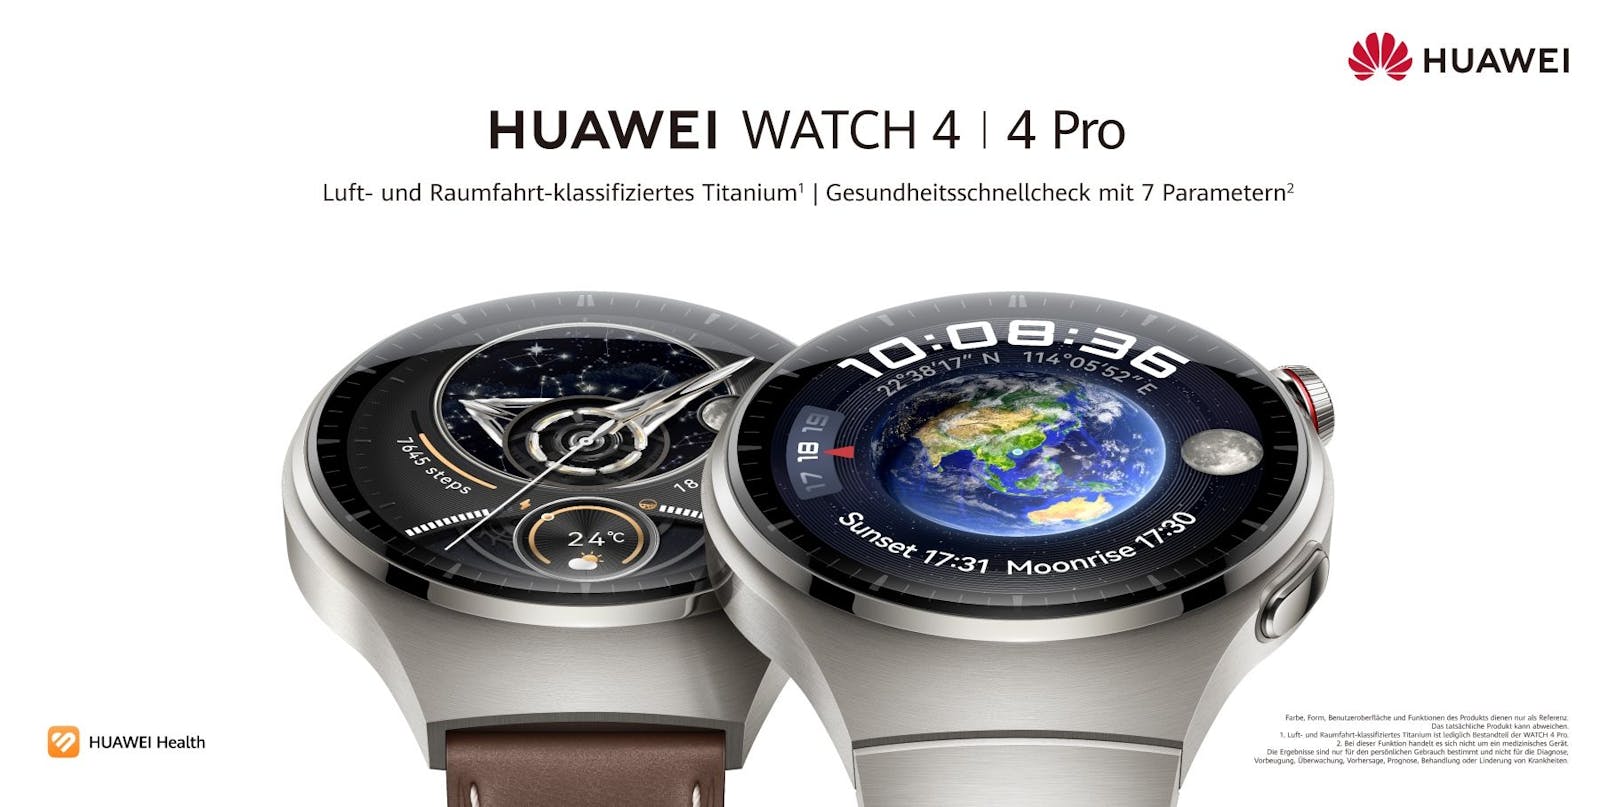 ... Smartwatch-Serie in Österreich bekannt. Und bei den beiden Modellen Huawei Watch 4 und Huawei Watch 4 Pro ist einiges neu – vom Design bis hin zu den ...